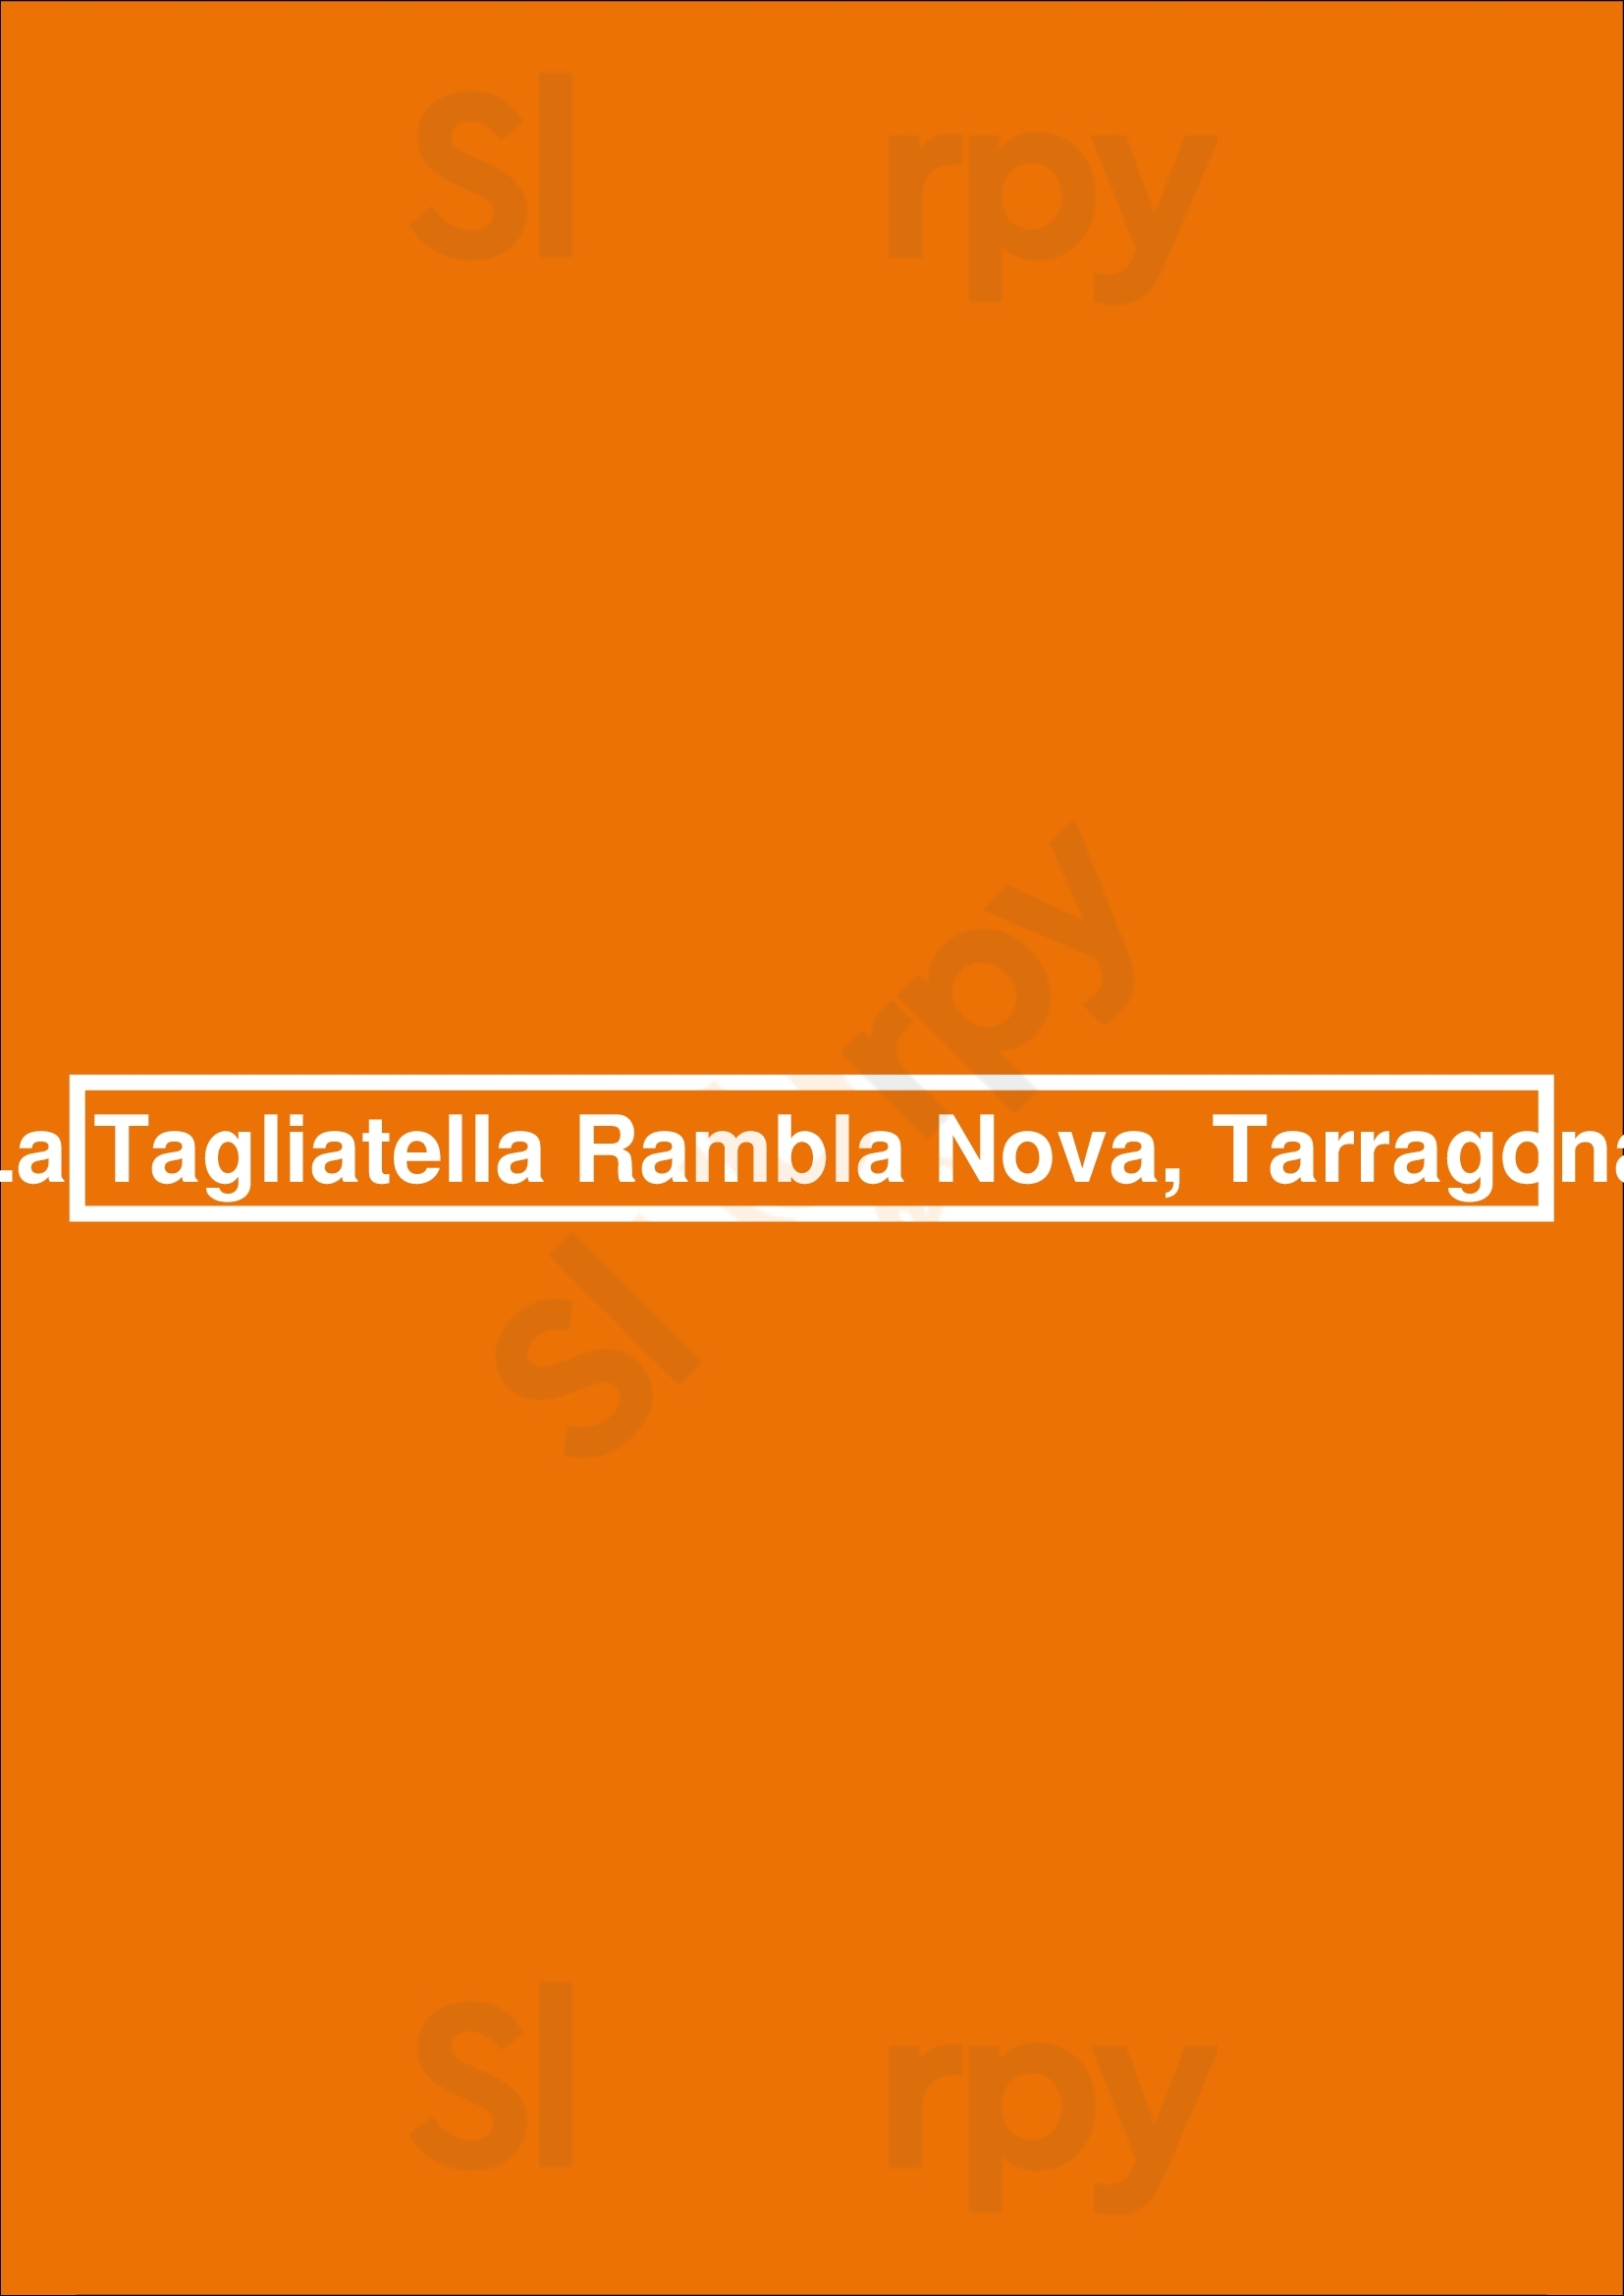 La Tagliatella Rambla Nova, Tarragona Tarragona Menu - 1